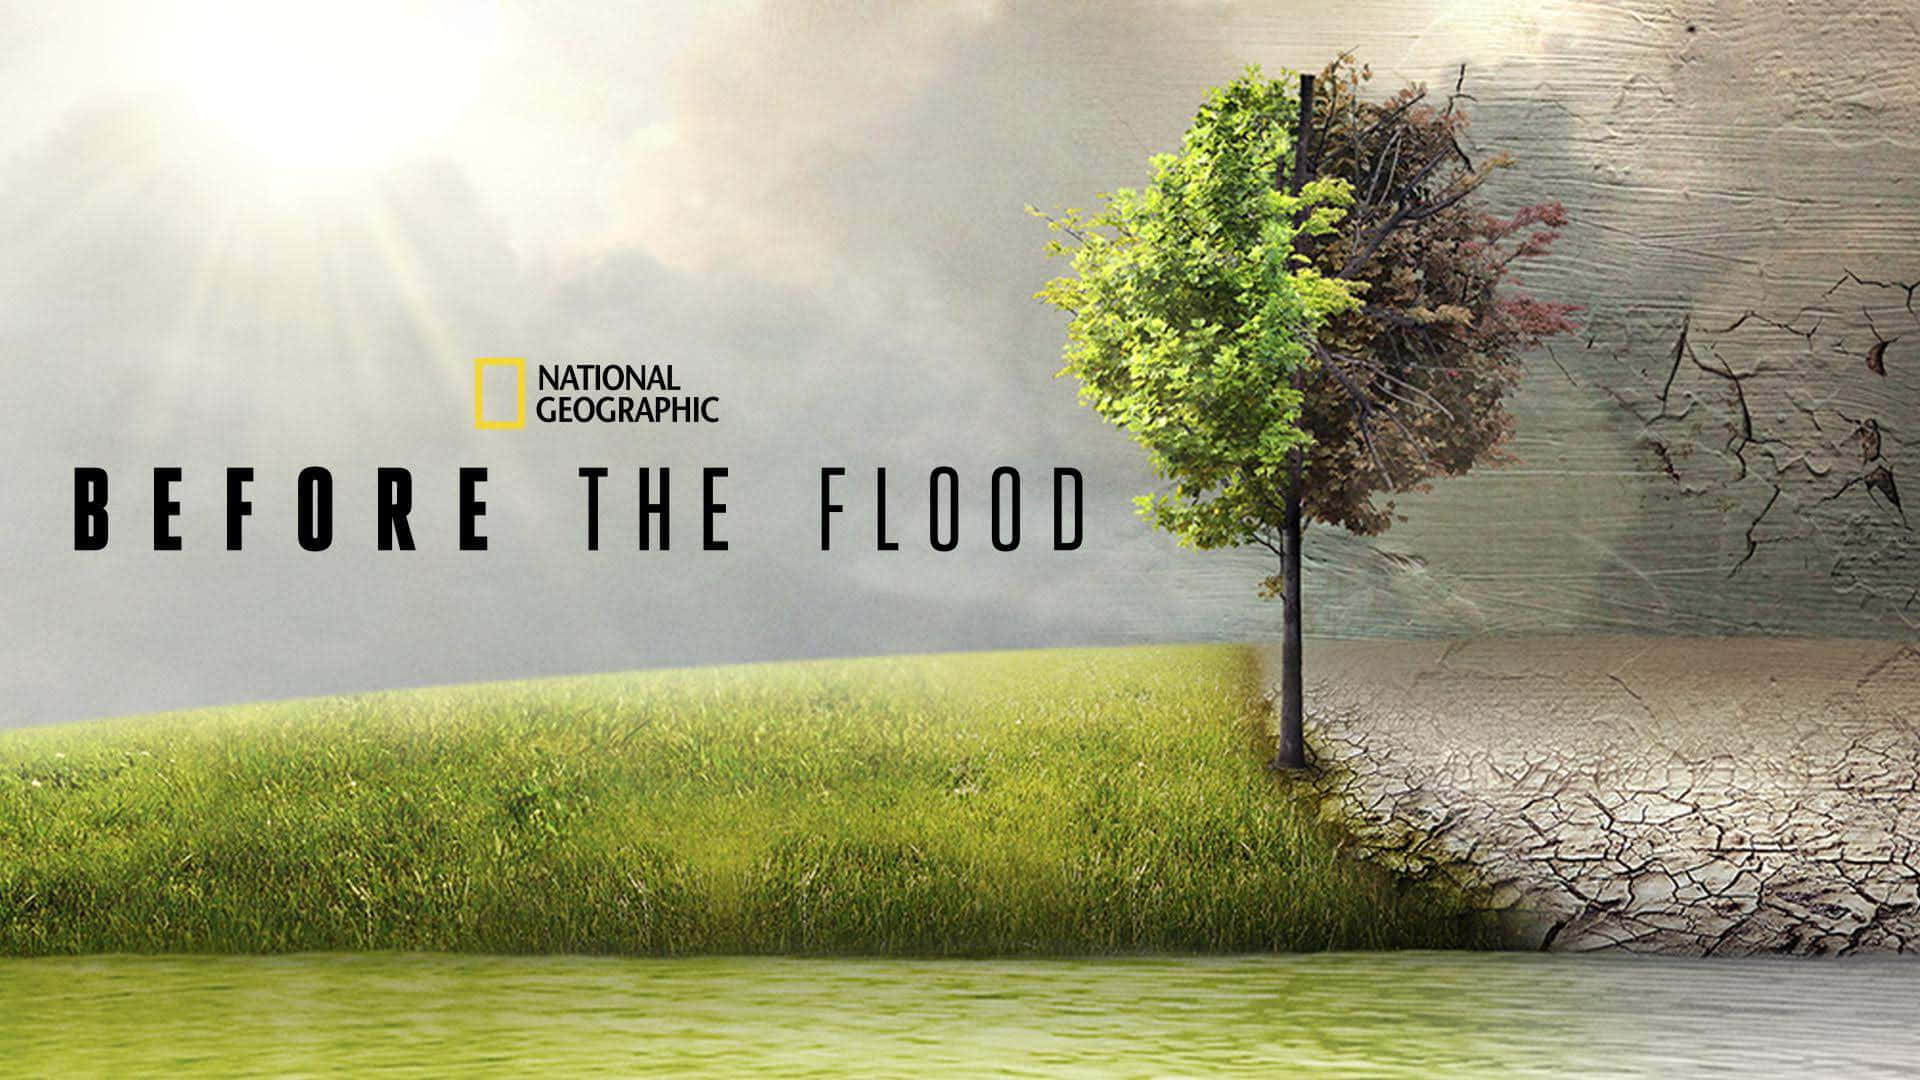 Vorder Flut National Geographic Poster 2016 Film Wallpaper